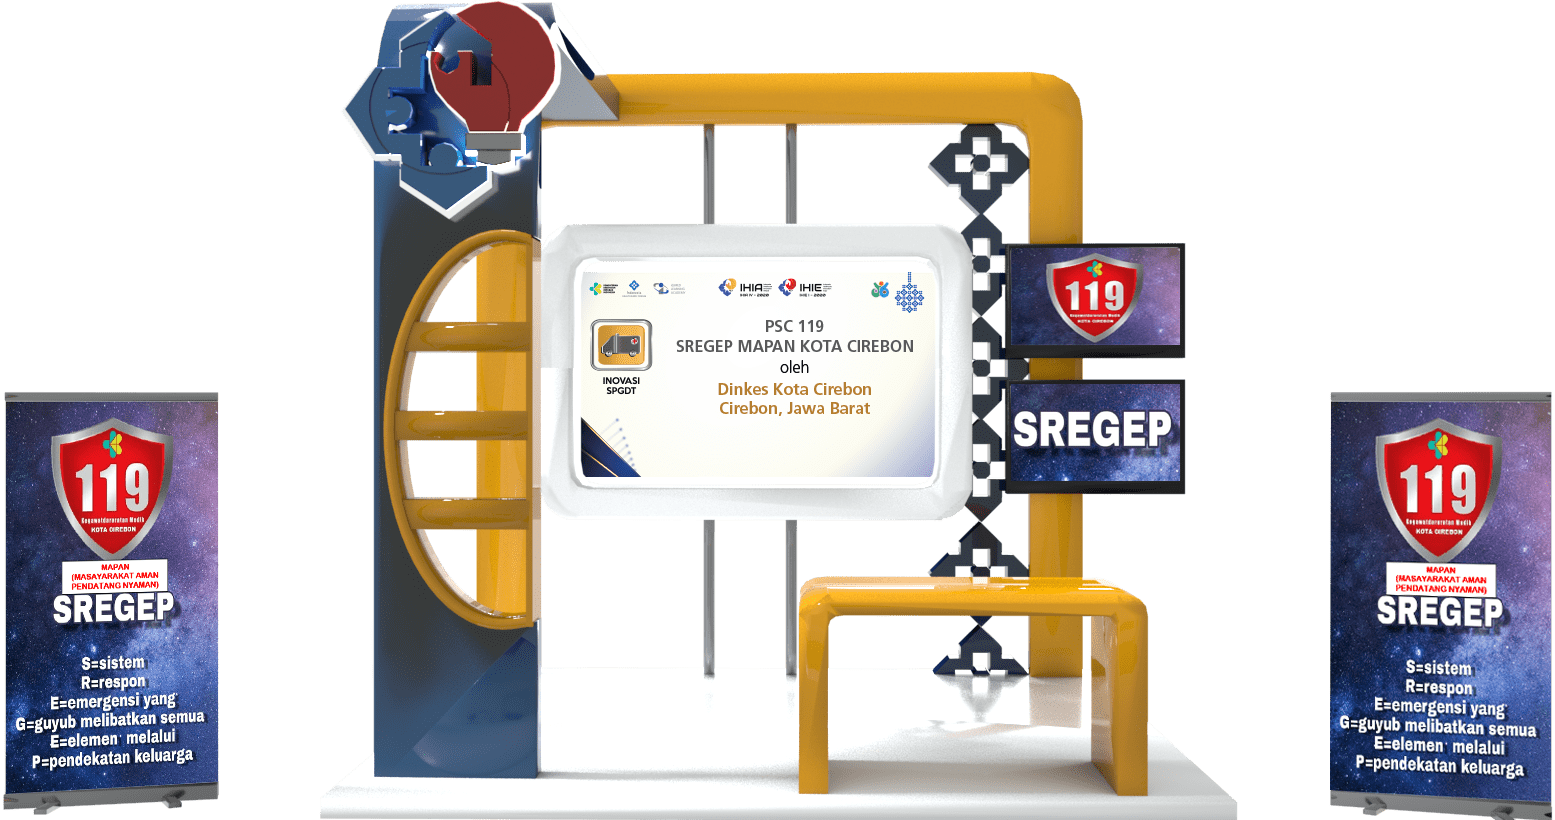 SPGDT 8 - PSC SREGEP (1) (wecompress.com).png